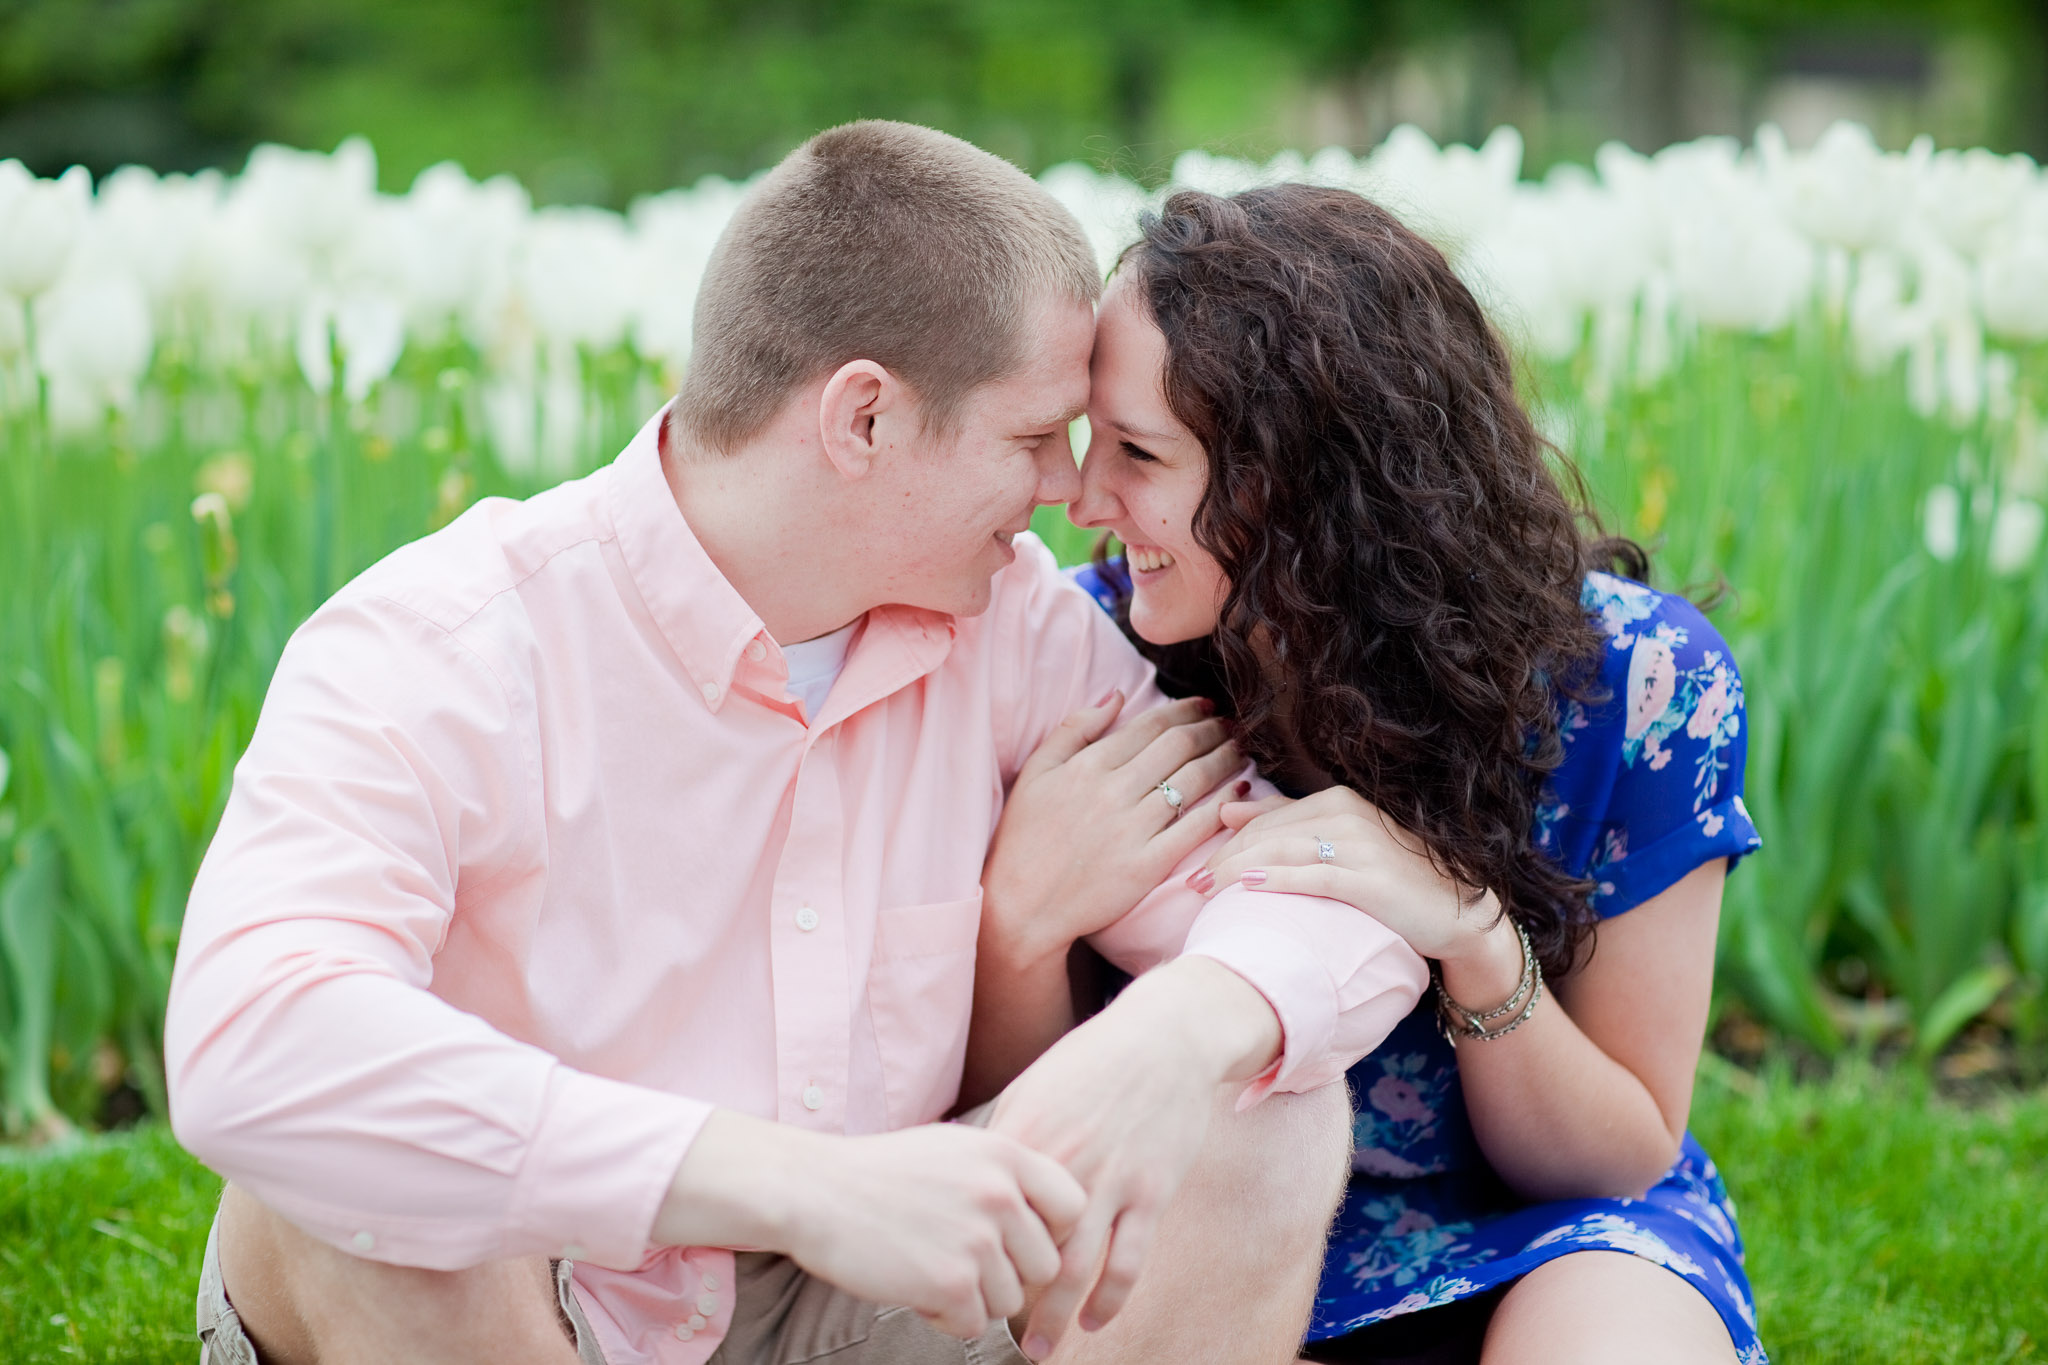 Engaged Couple - Notre Dame University - Granger Indiana Wedding Photographer - Toni Jay Photography